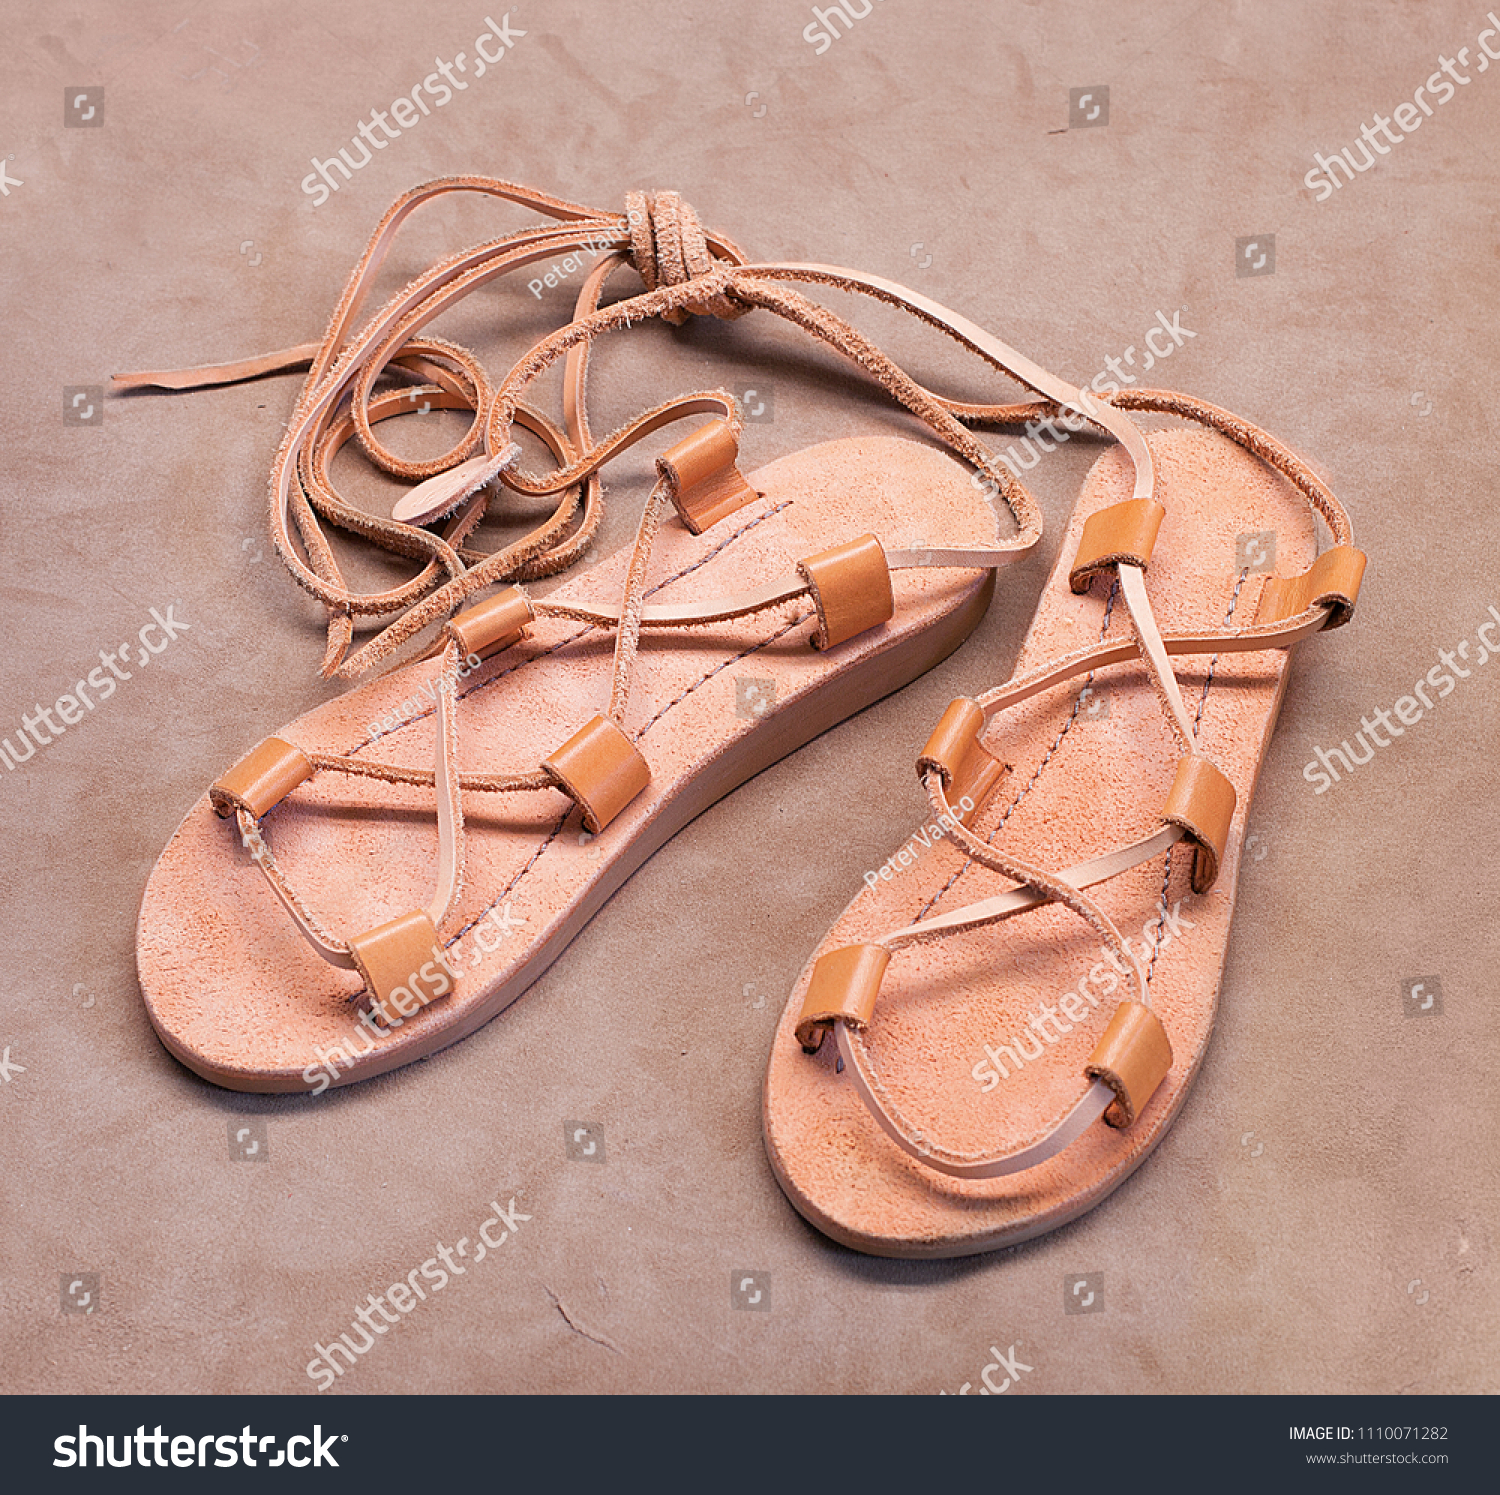 Jesus Shoes Christ Sandals Sandals 